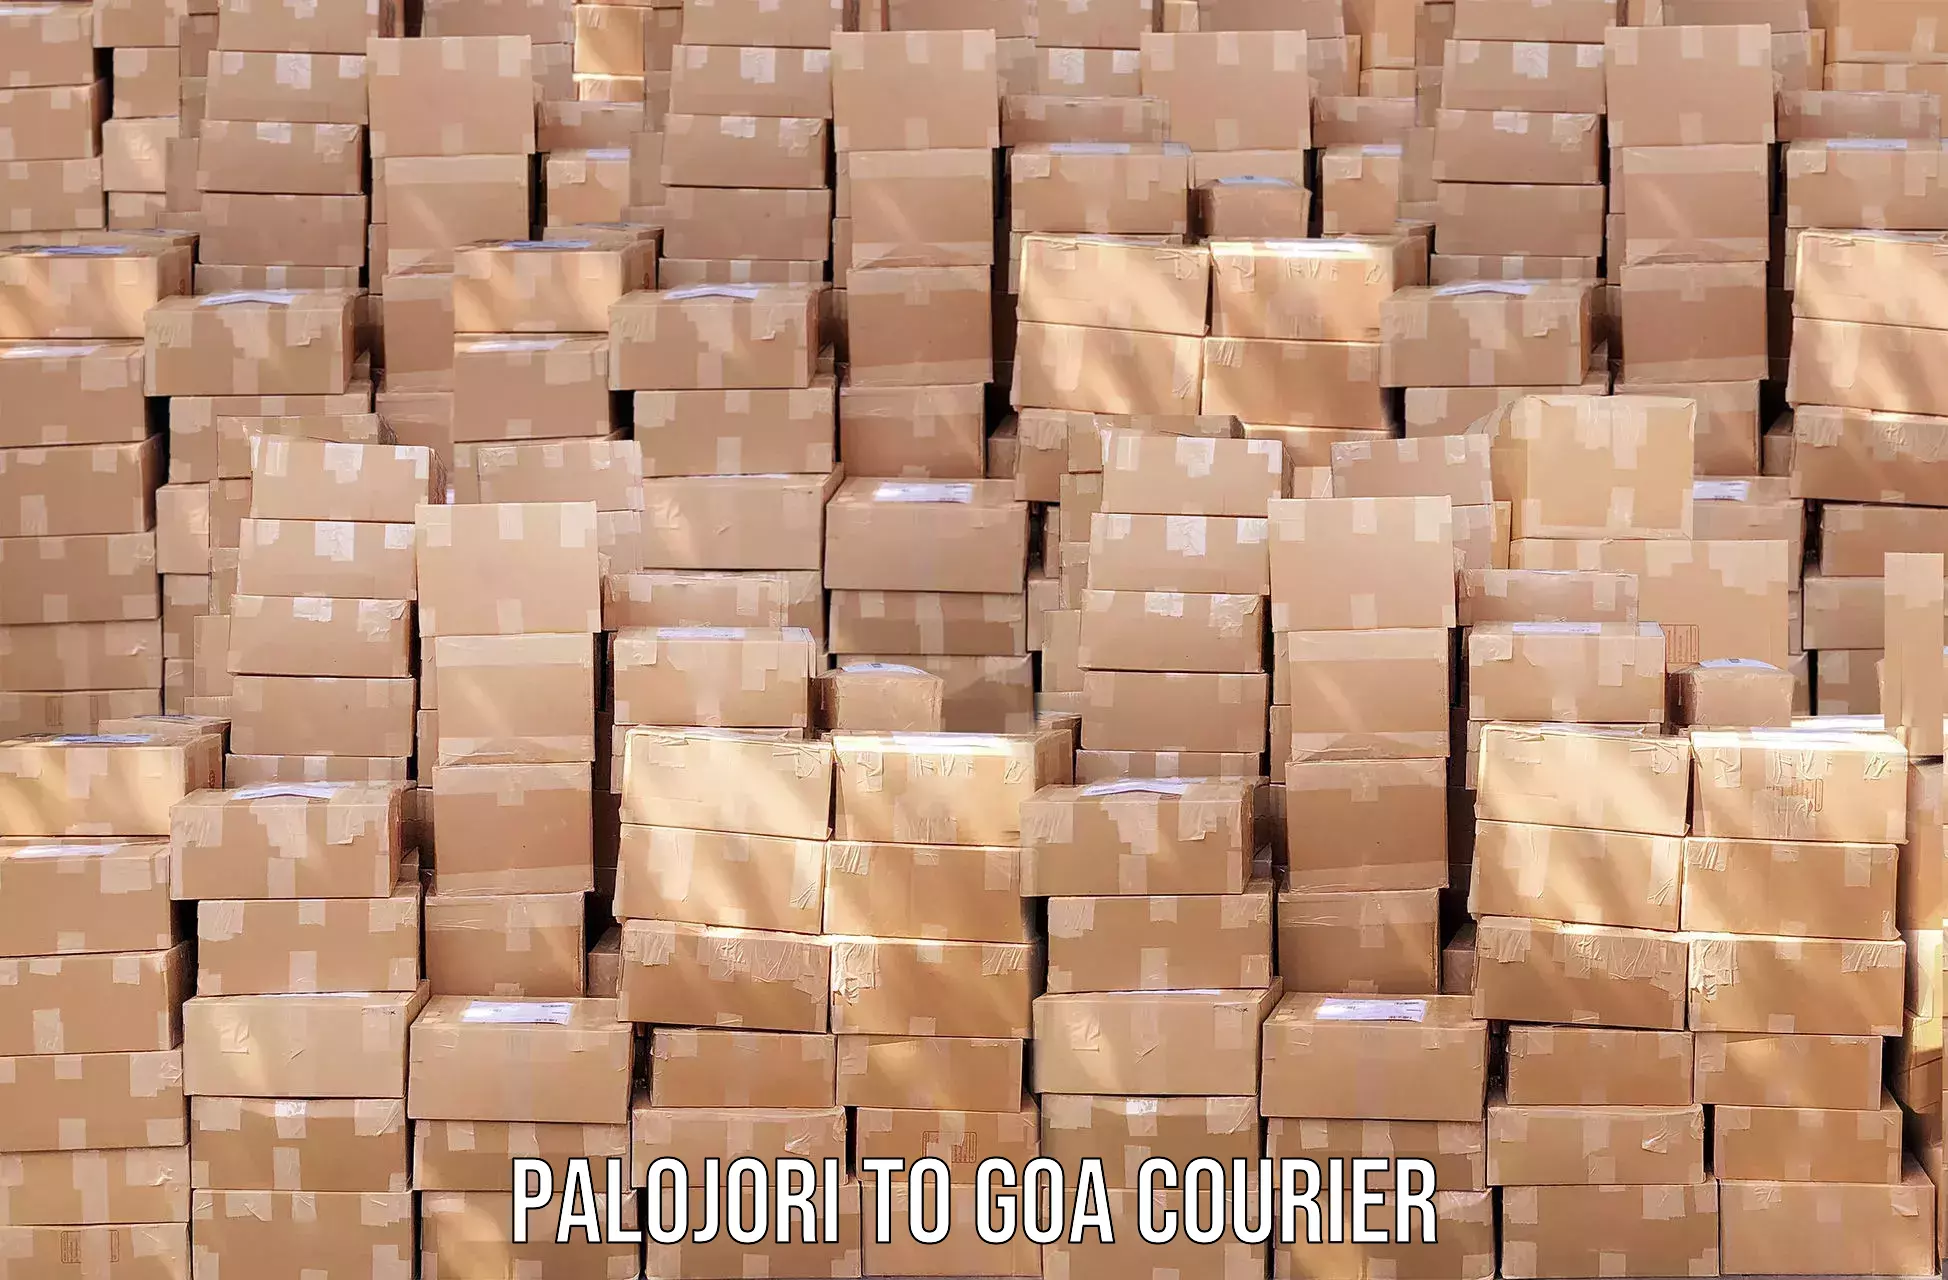 Professional courier handling Palojori to Canacona